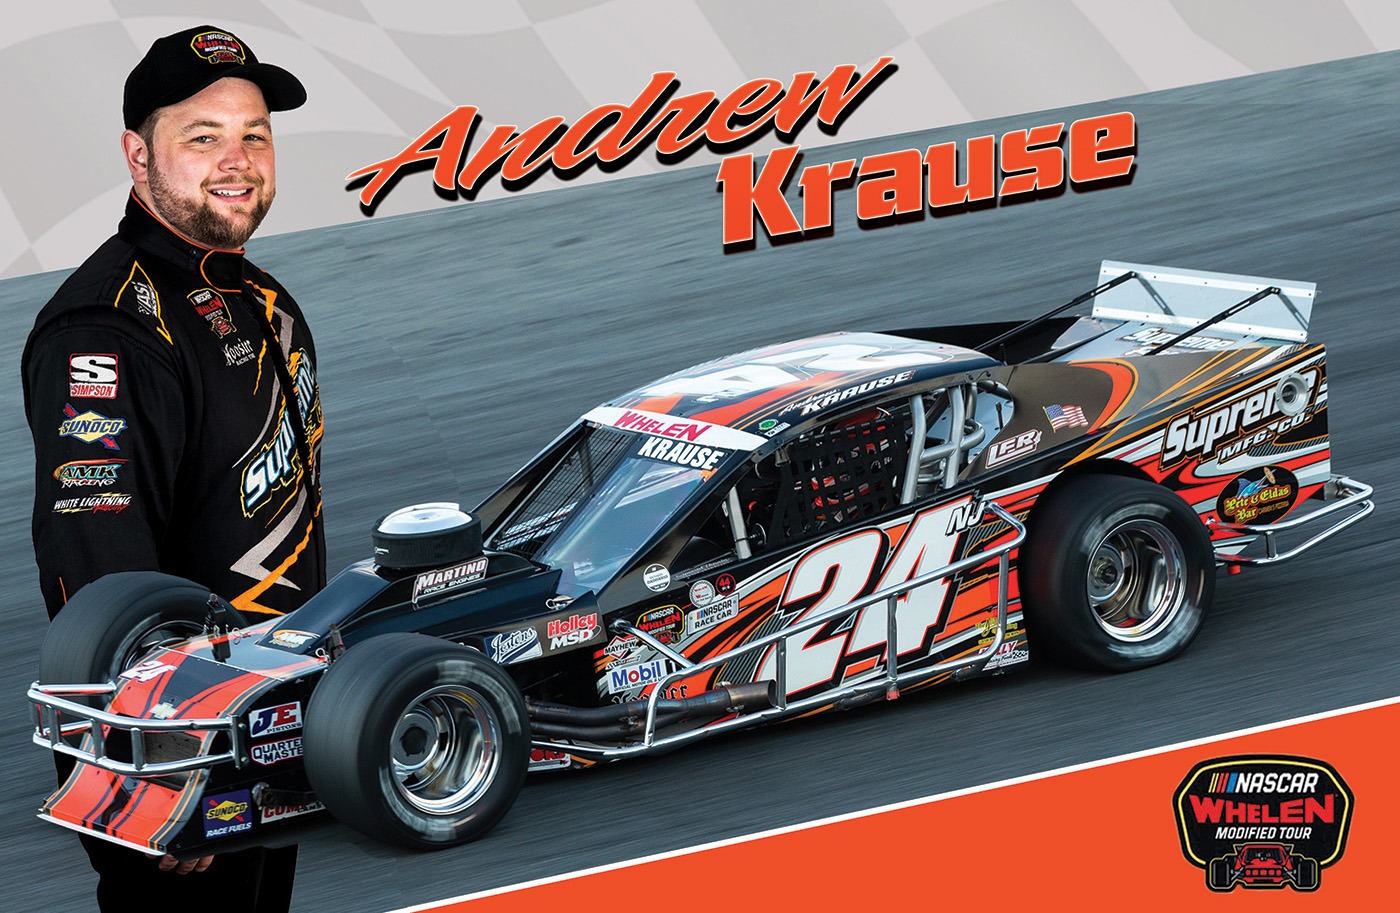 Andrew Krause Racing Hero Card